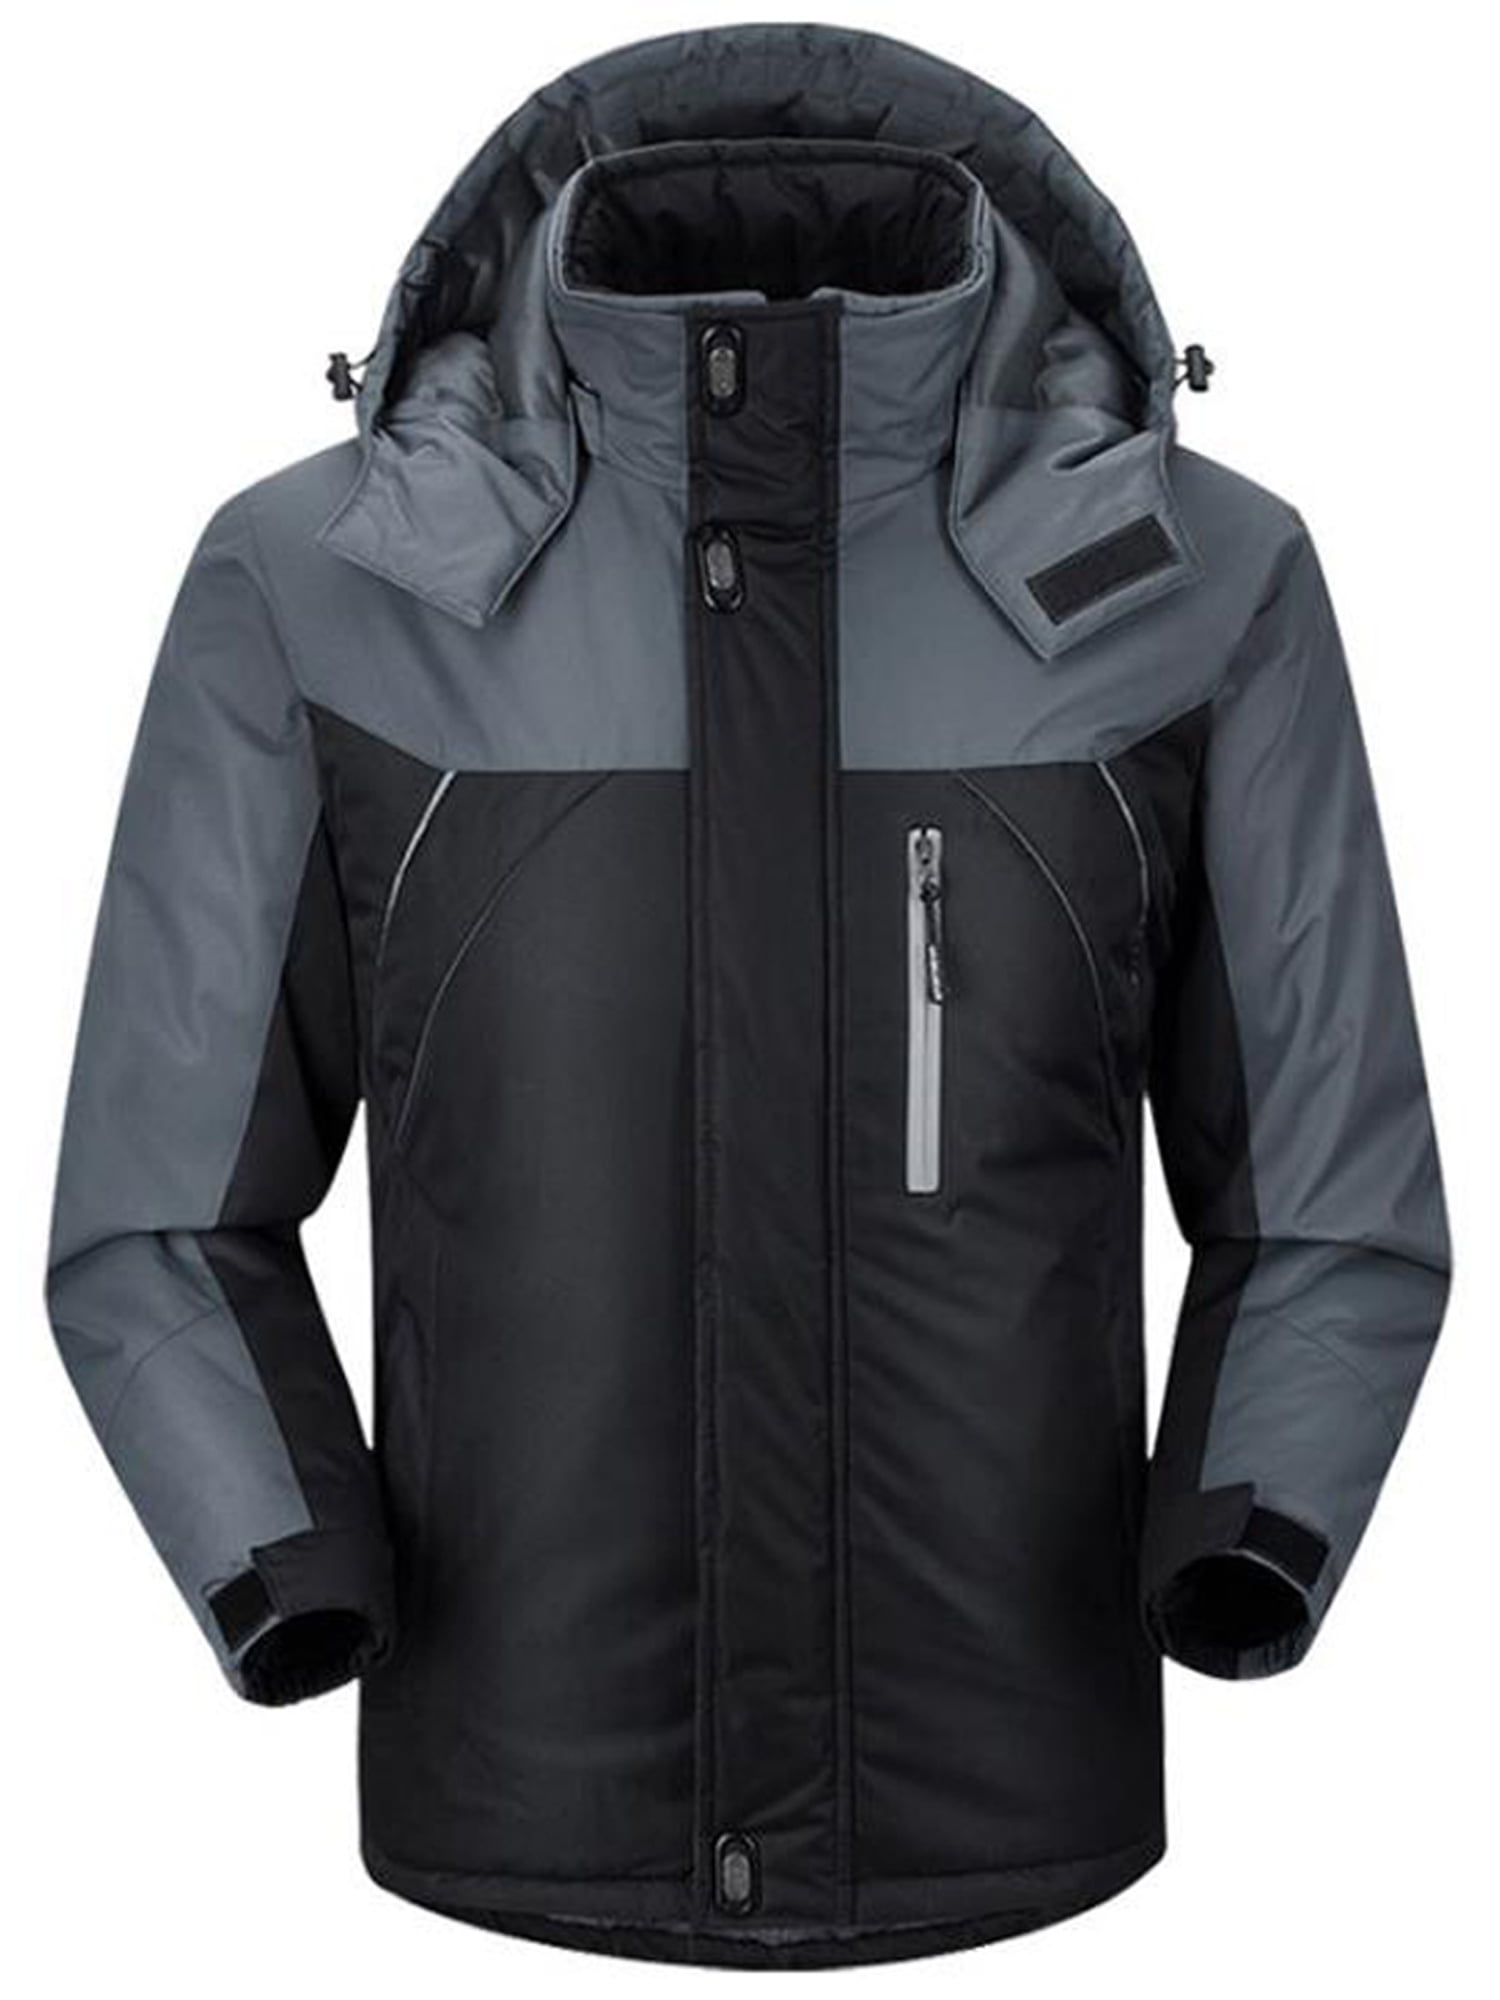 Wodstyle - Men's Winter Ski Jacket Coat Snow Waterproof Windbreaker ...